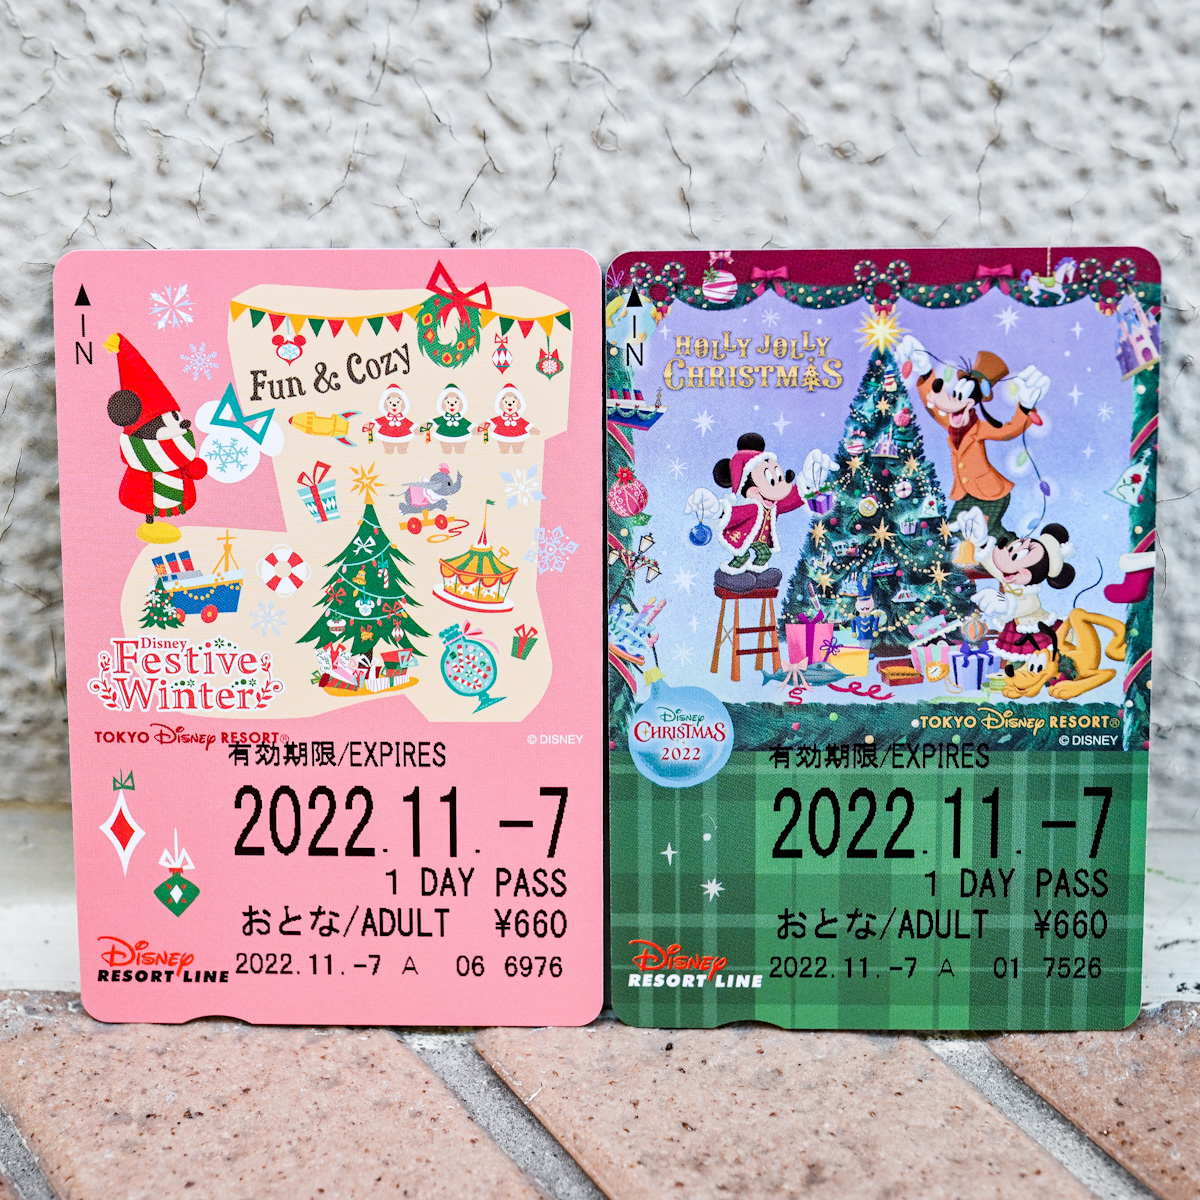 ディズニーリゾートライン“ディズニー・クリスマス2022”フリーきっぷ